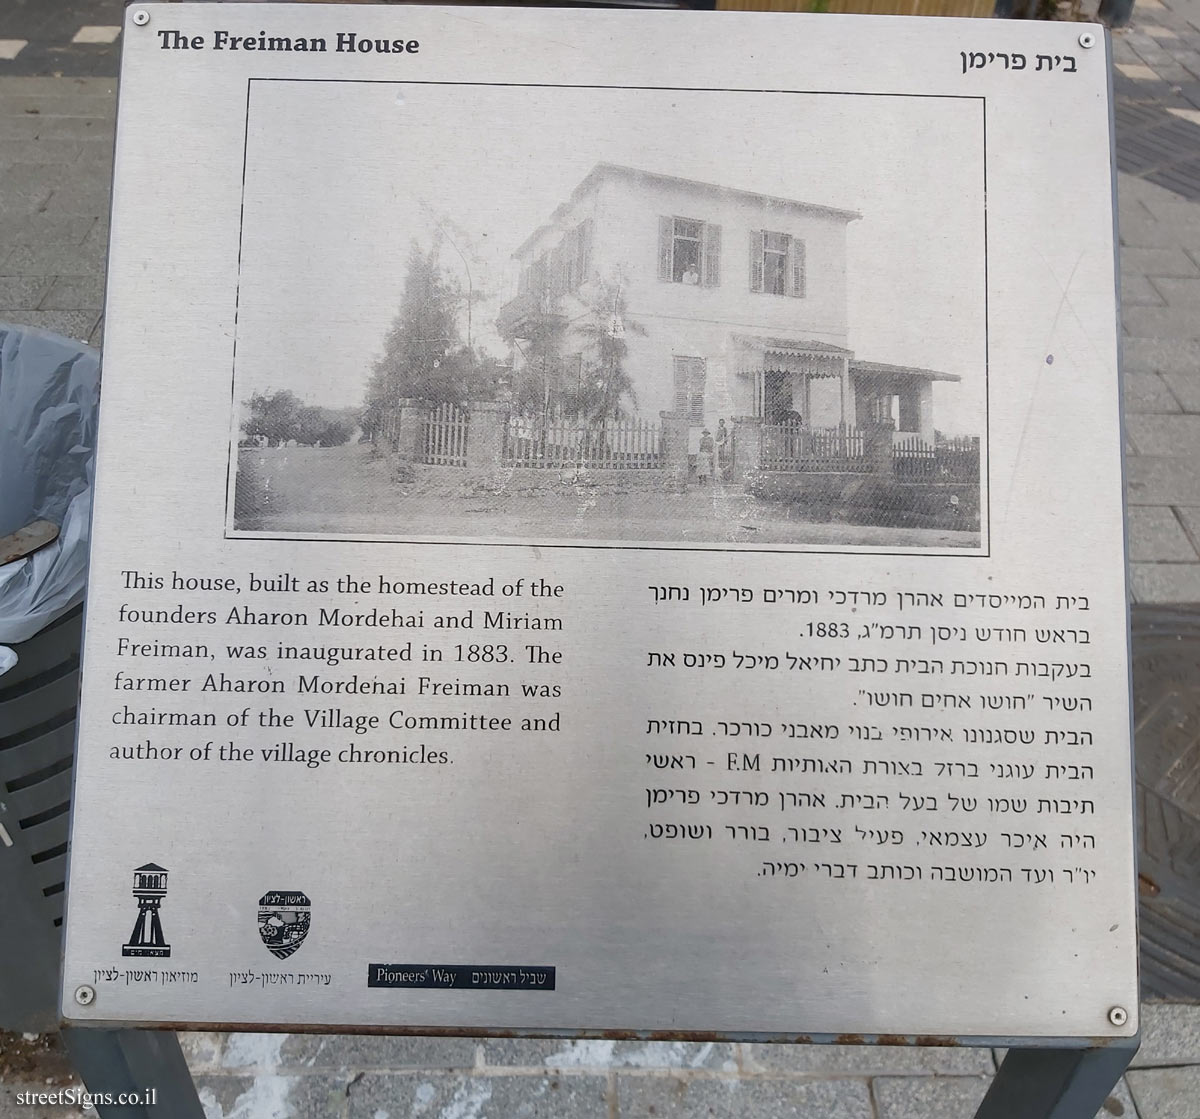 Rishon LeTsiyon - The Freiman House